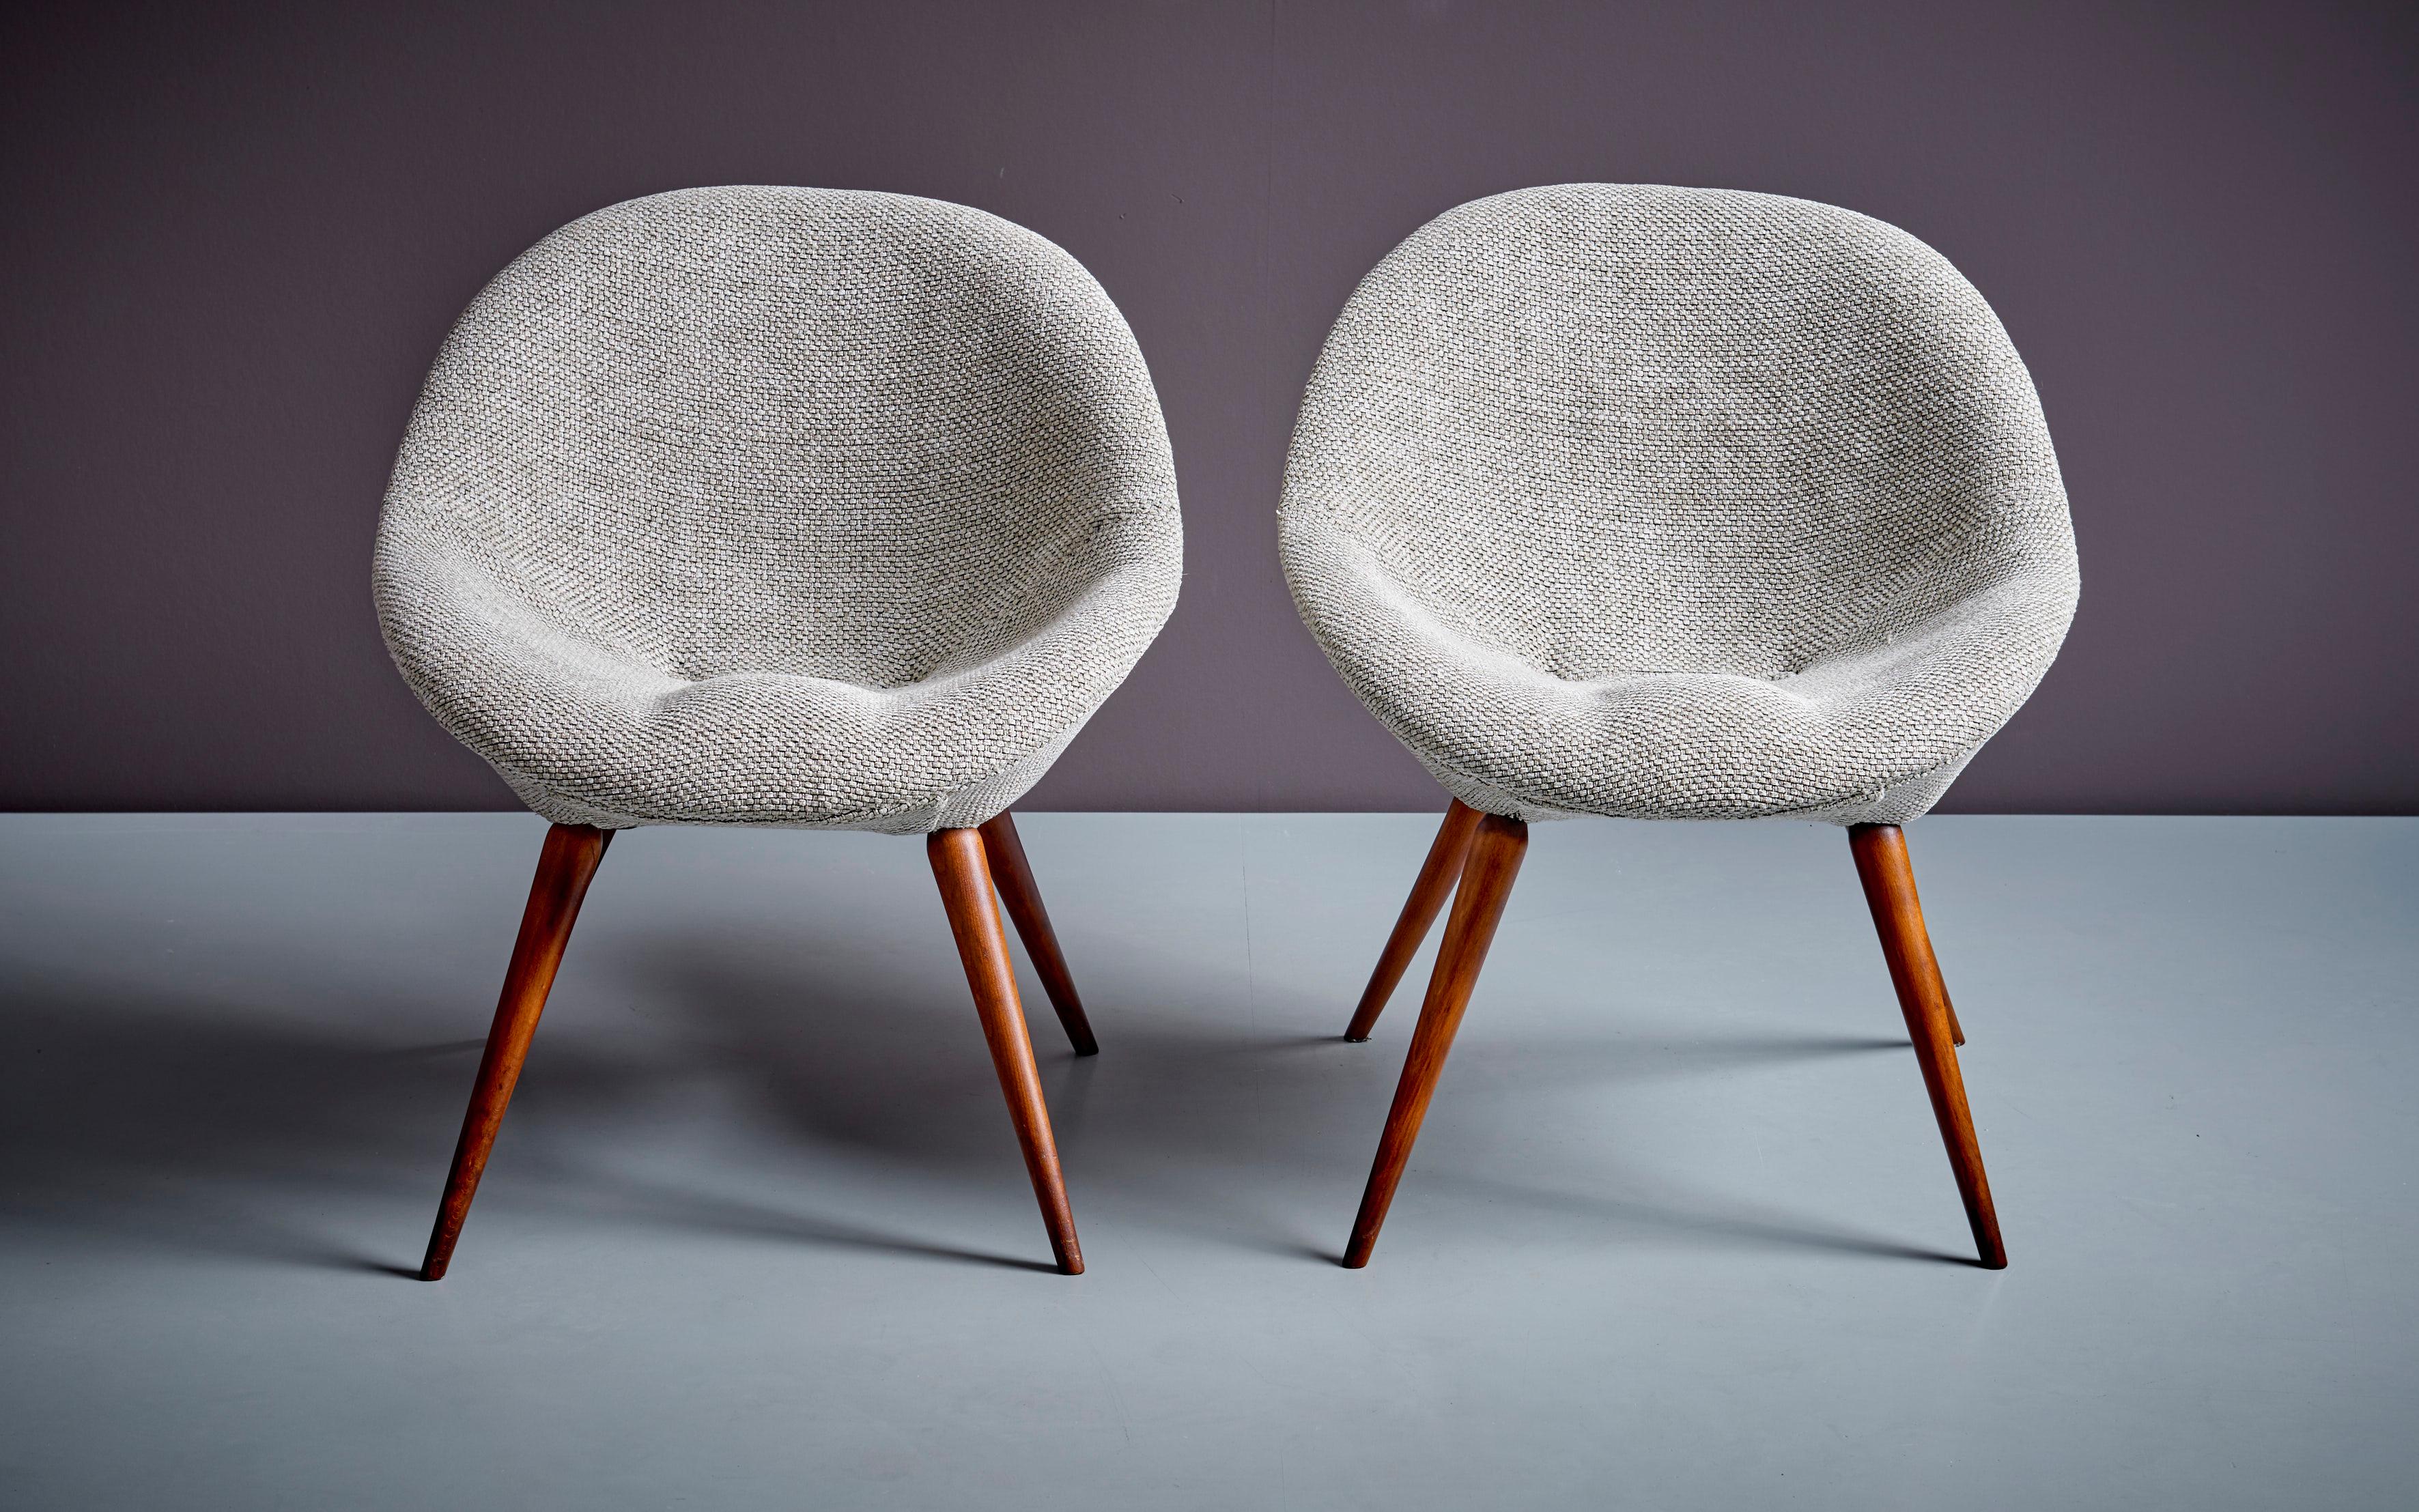 Ein Paar neu gepolsterte Fritz Neth Lounge Chairs in Grau, Deutschland - 1960er Jahre. Diese Stühle von Fritz Neth zeichnen sich durch ihr schlichtes Design und ihre hochwertige Verarbeitung aus, die mit Flexibilität und Komfort kombiniert werden.